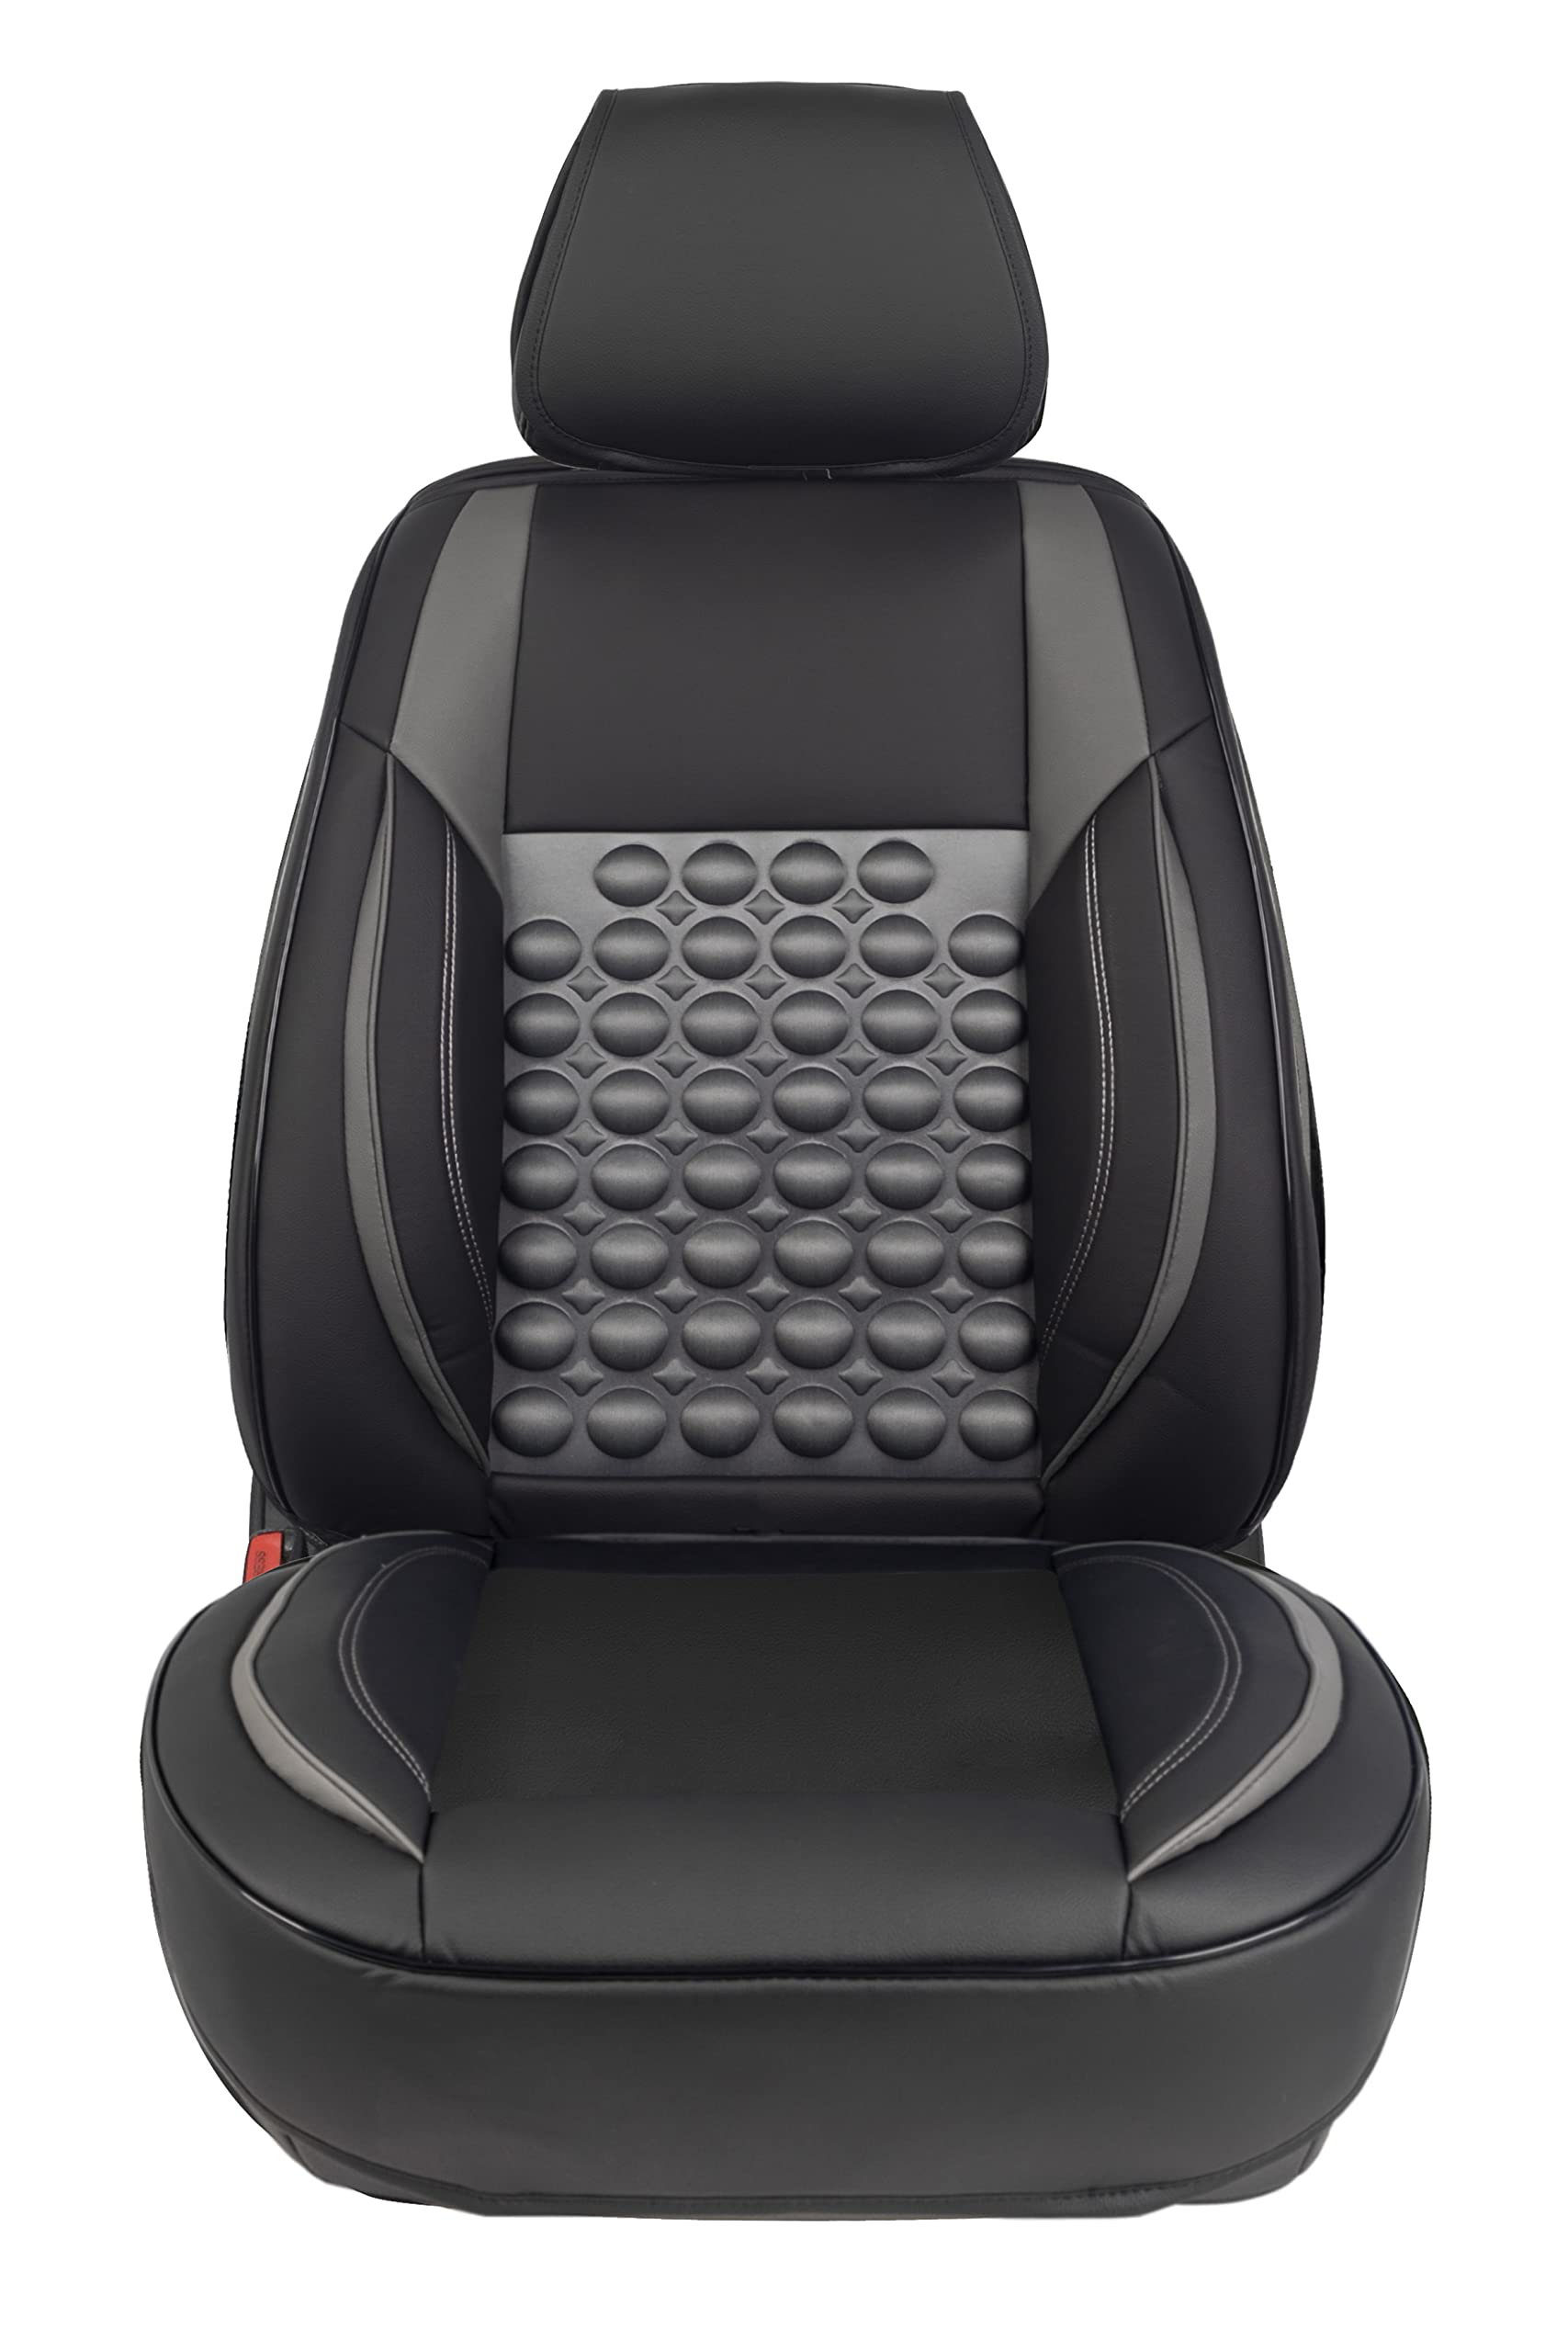 Origen Ergonomischer Sitzbezug für den Vordersitz Modell R6 Schwarz & Grau mit 6 cm Schaumstoff. Kompatibel mit Seitenairbag. Hergestellt aus hochwertigen Materialien. Universell und ergonomisch. von Origen